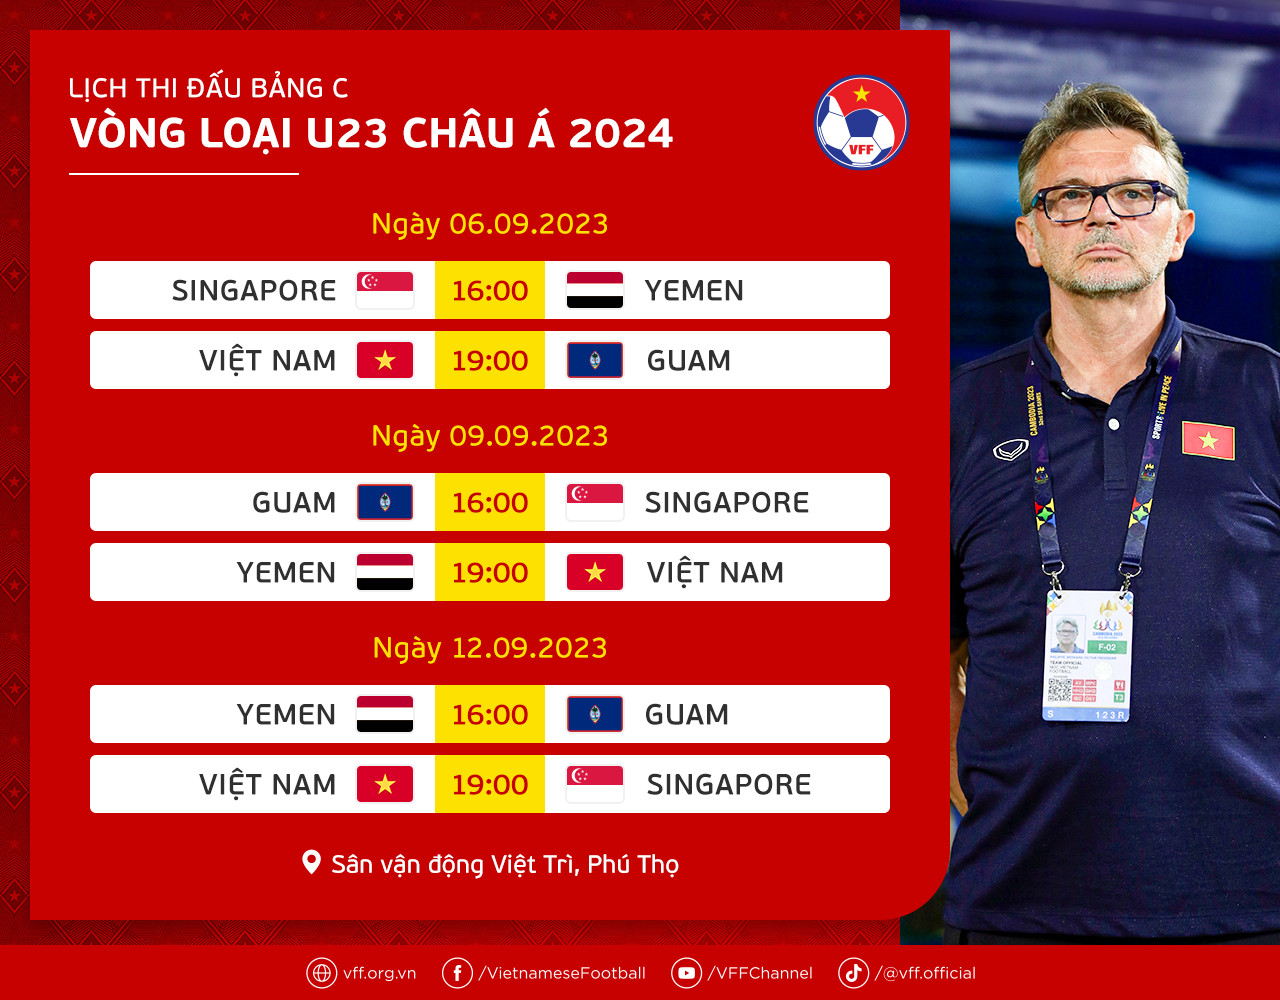 Lịch thi đấu vòng loại U23 châu Á 2024. Ảnh: VFF